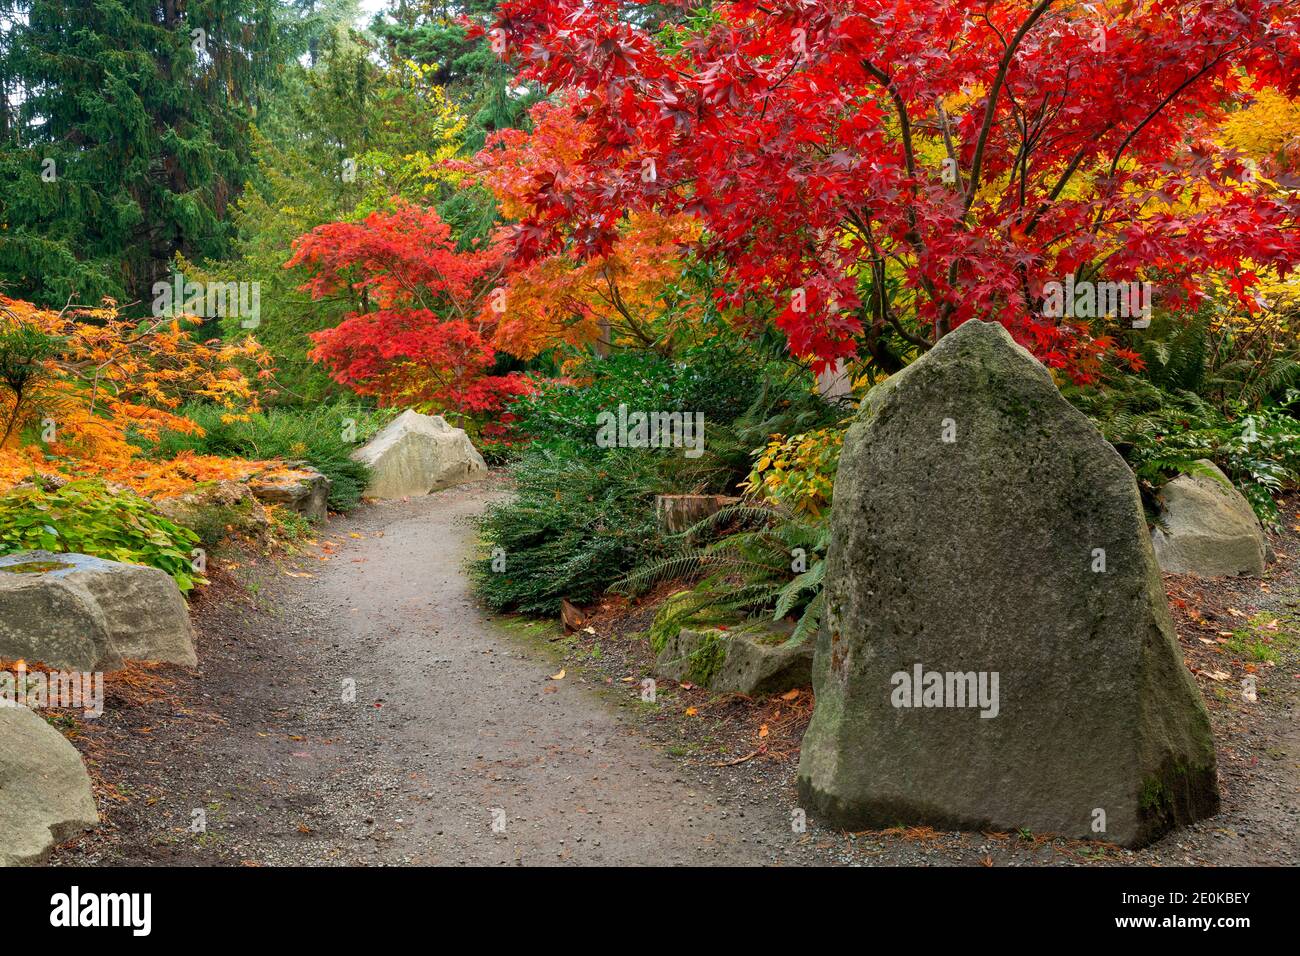 WA18946-00...WASHINGTON - Autunm at Kabota Garden, a Seattle city park. Stock Photo